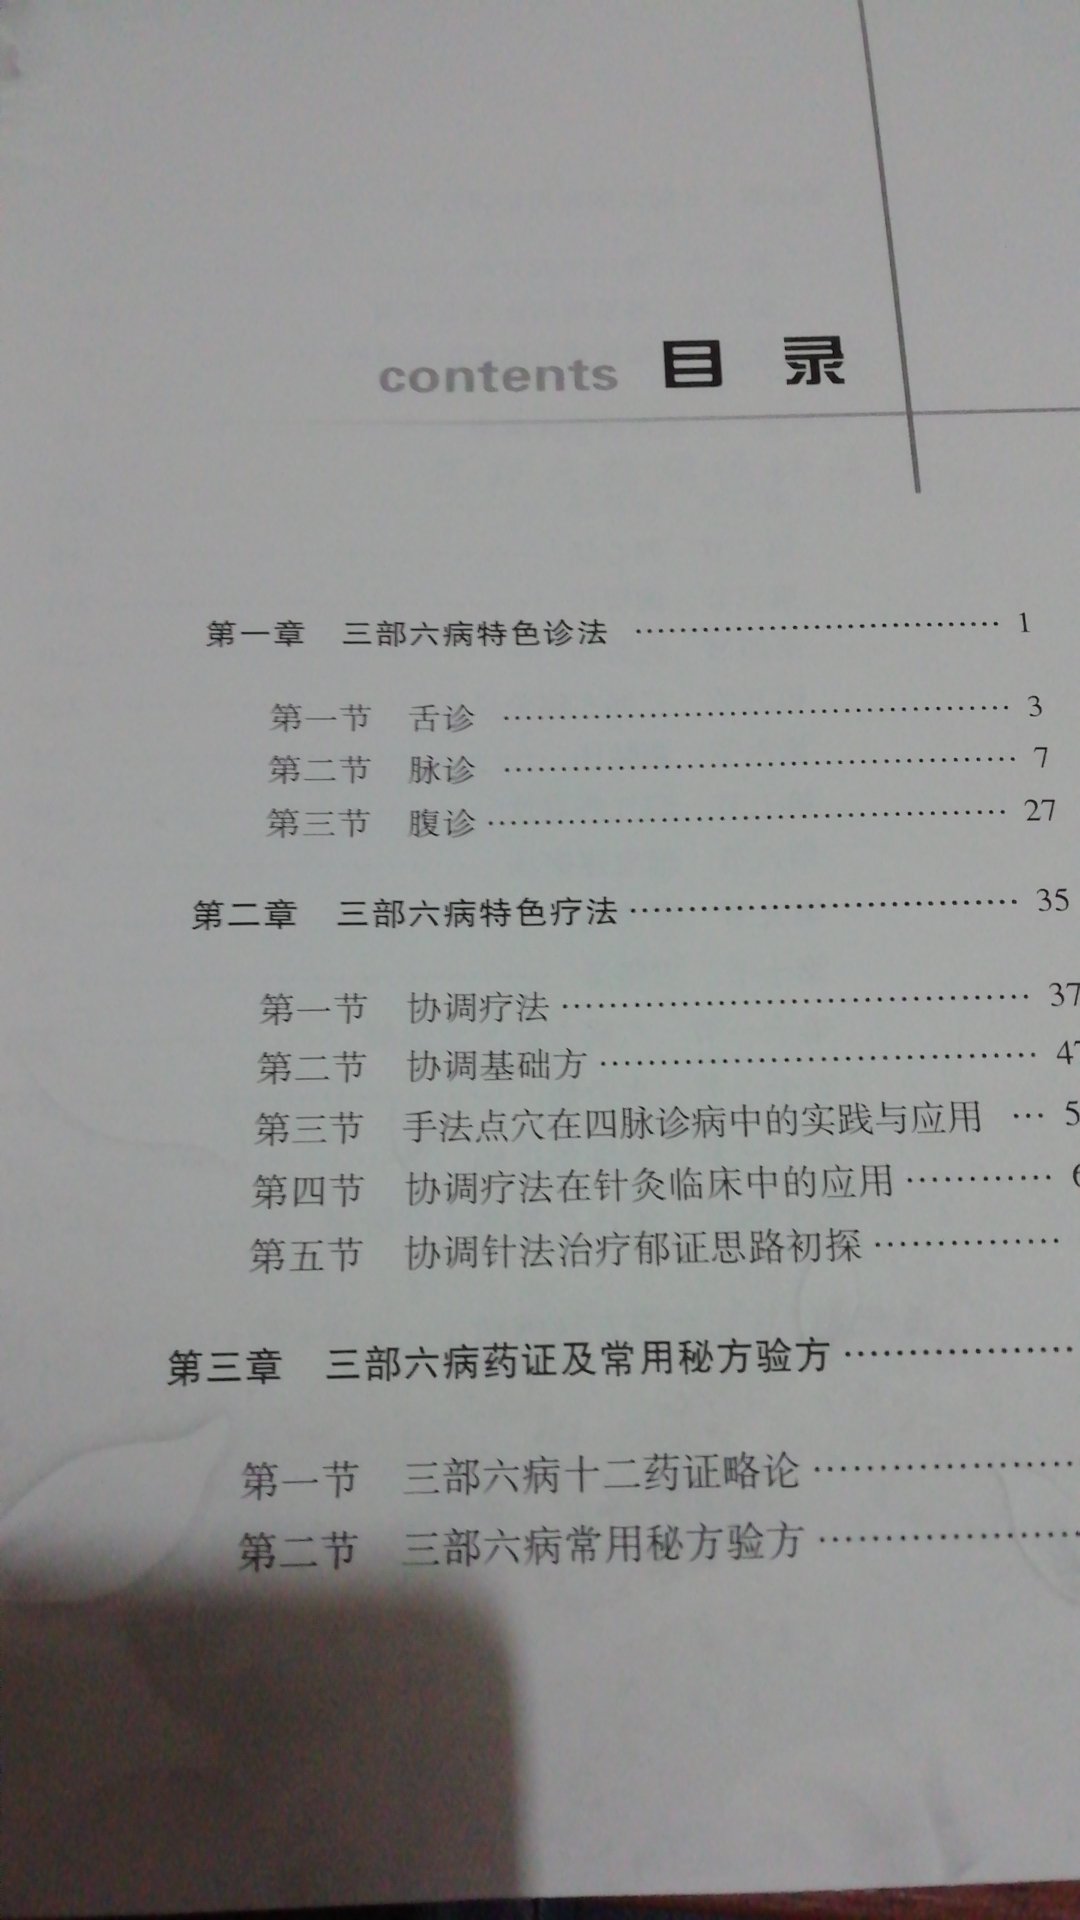 三部六病中级教程一书是学习名老中医刘绍武三部六病学说后中级教材，讲述了三部六病特色疗法及常用秘验方。